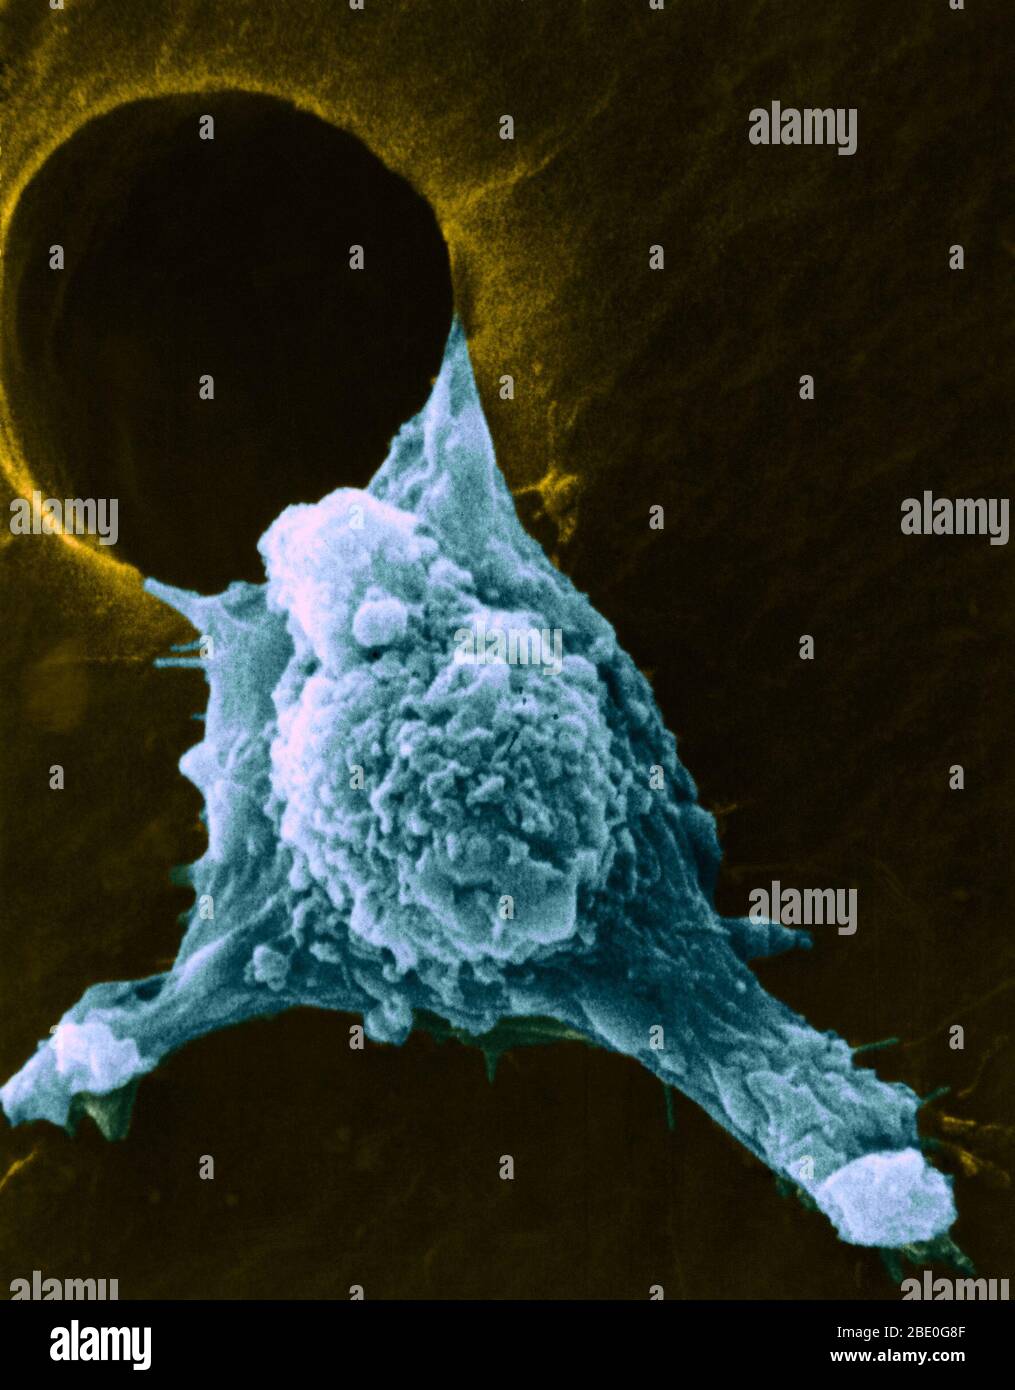 Células cancerosas migratorias. Micrografía electrónica de exploración coloreada (SEM) de una célula cancerosa cultivada que se mueve (metastatiza) a través de un agujero en una película de soporte. Se pueden ver numerosos pseudopodia (tipo brazo), fillipodia (tipo hilo) y sangrados de superficie (bulbos). Estas características son características de las células altamente móviles, y permiten que las células cancerosas se diseminen rápidamente alrededor del cuerpo e invaden otros órganos y tejidos (metástasis). Foto de stock